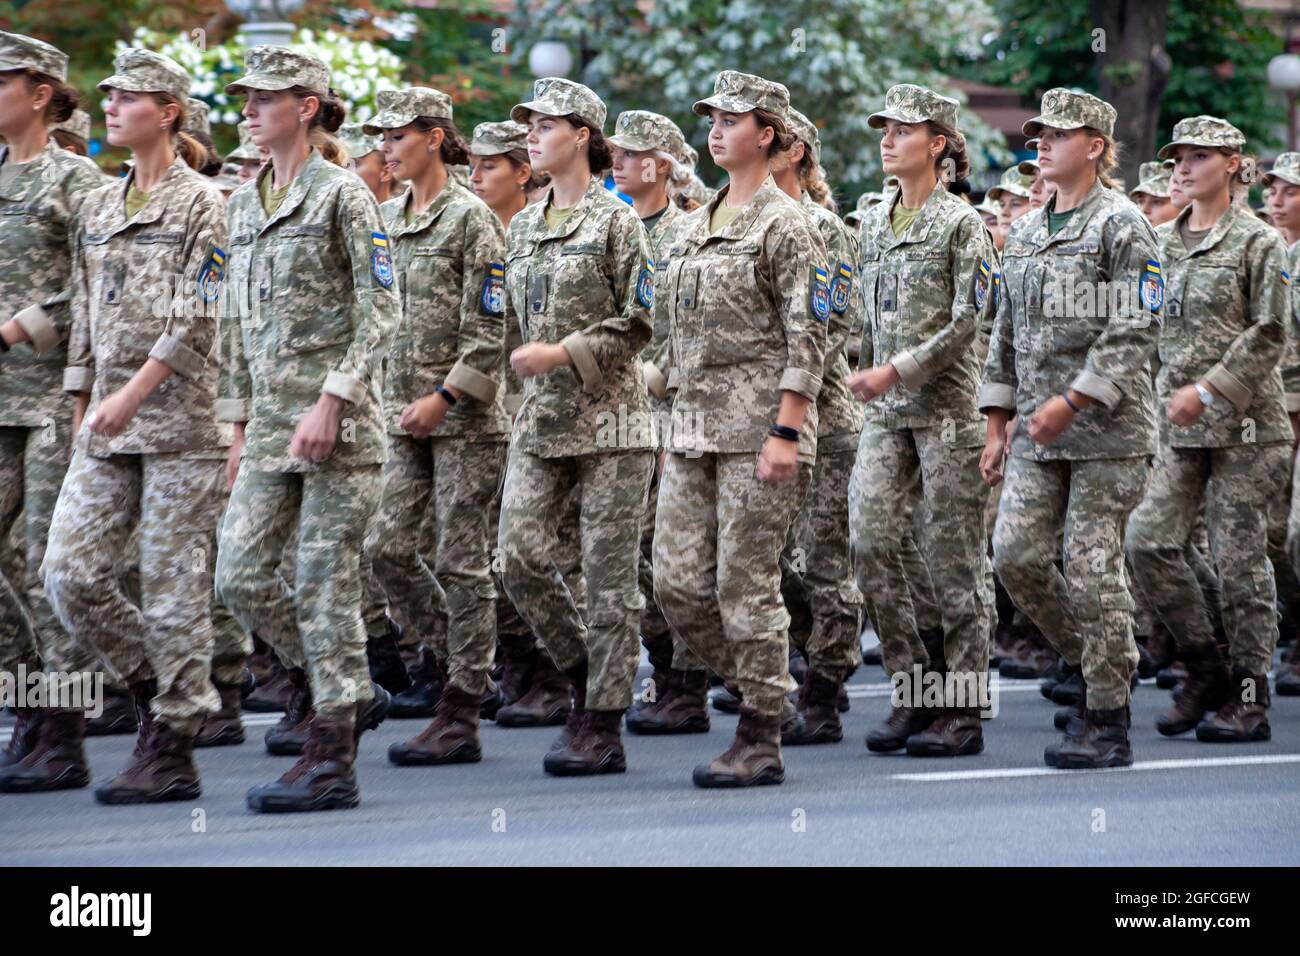 Ukraine, Kiew - 18. August 2021: Militärfrauen und -Mädchen in Uniform